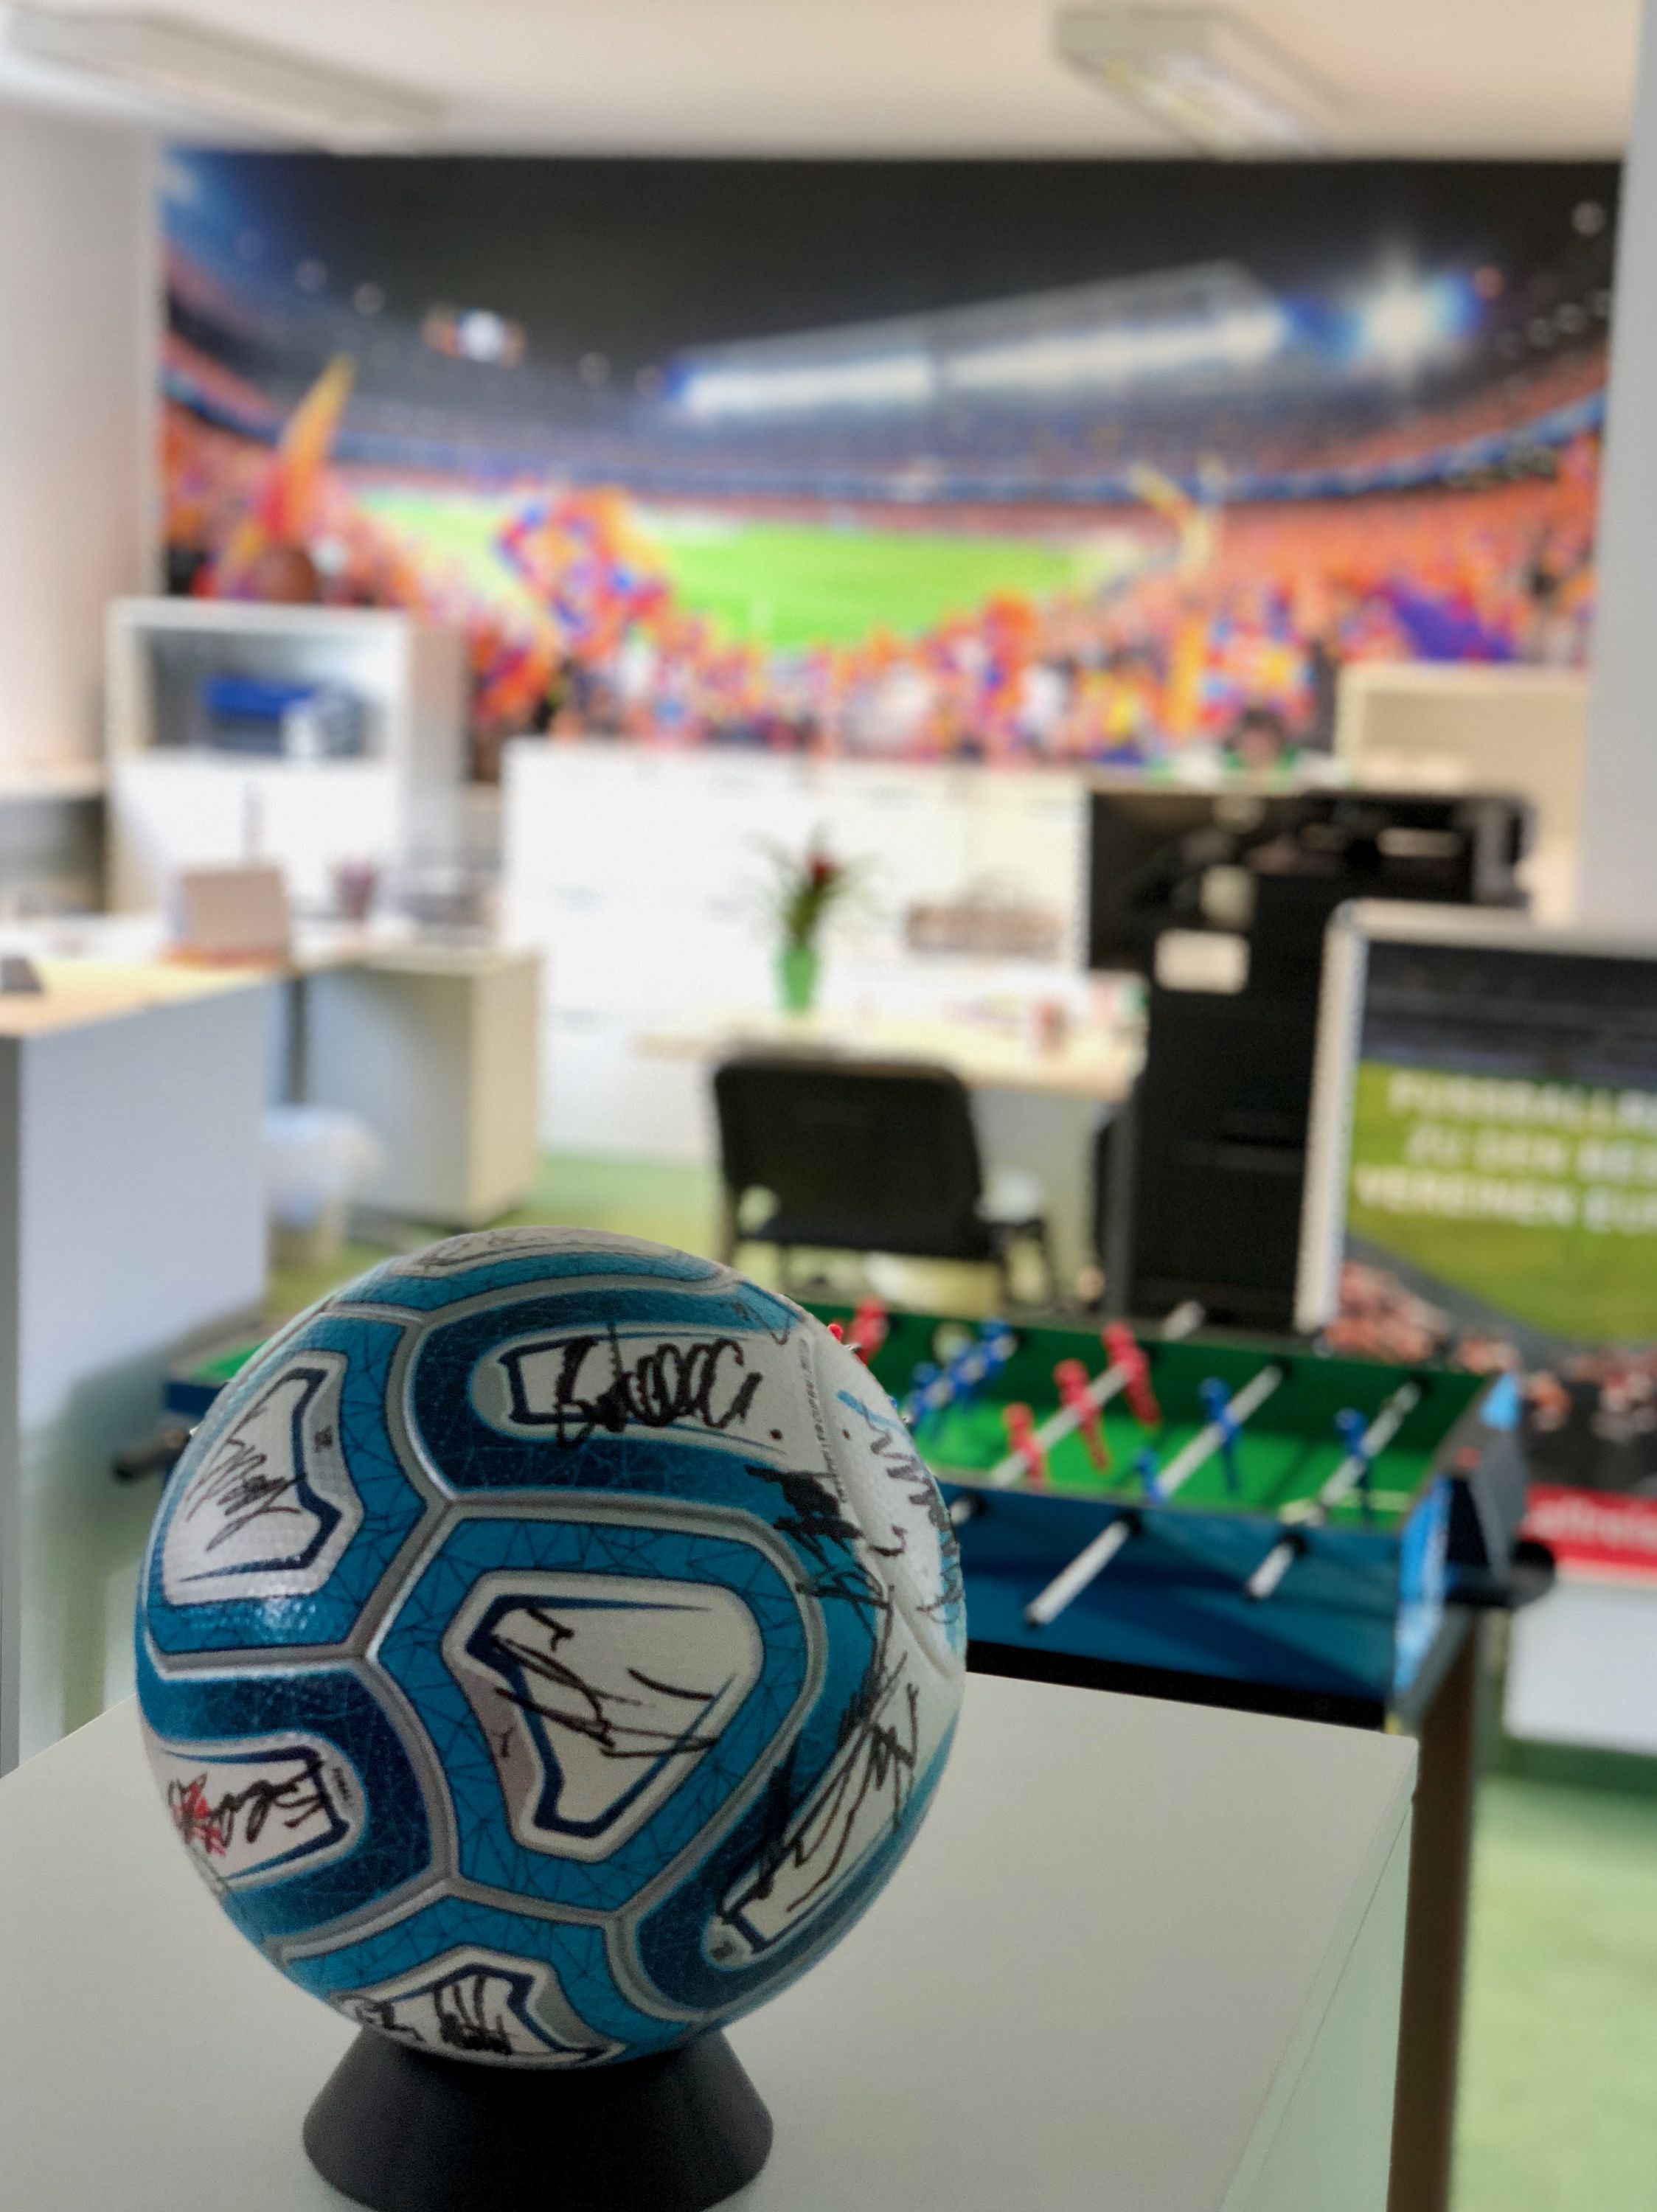 fussballreisen.at übersiedelt ins neue Kompetenzzentrum in Wien